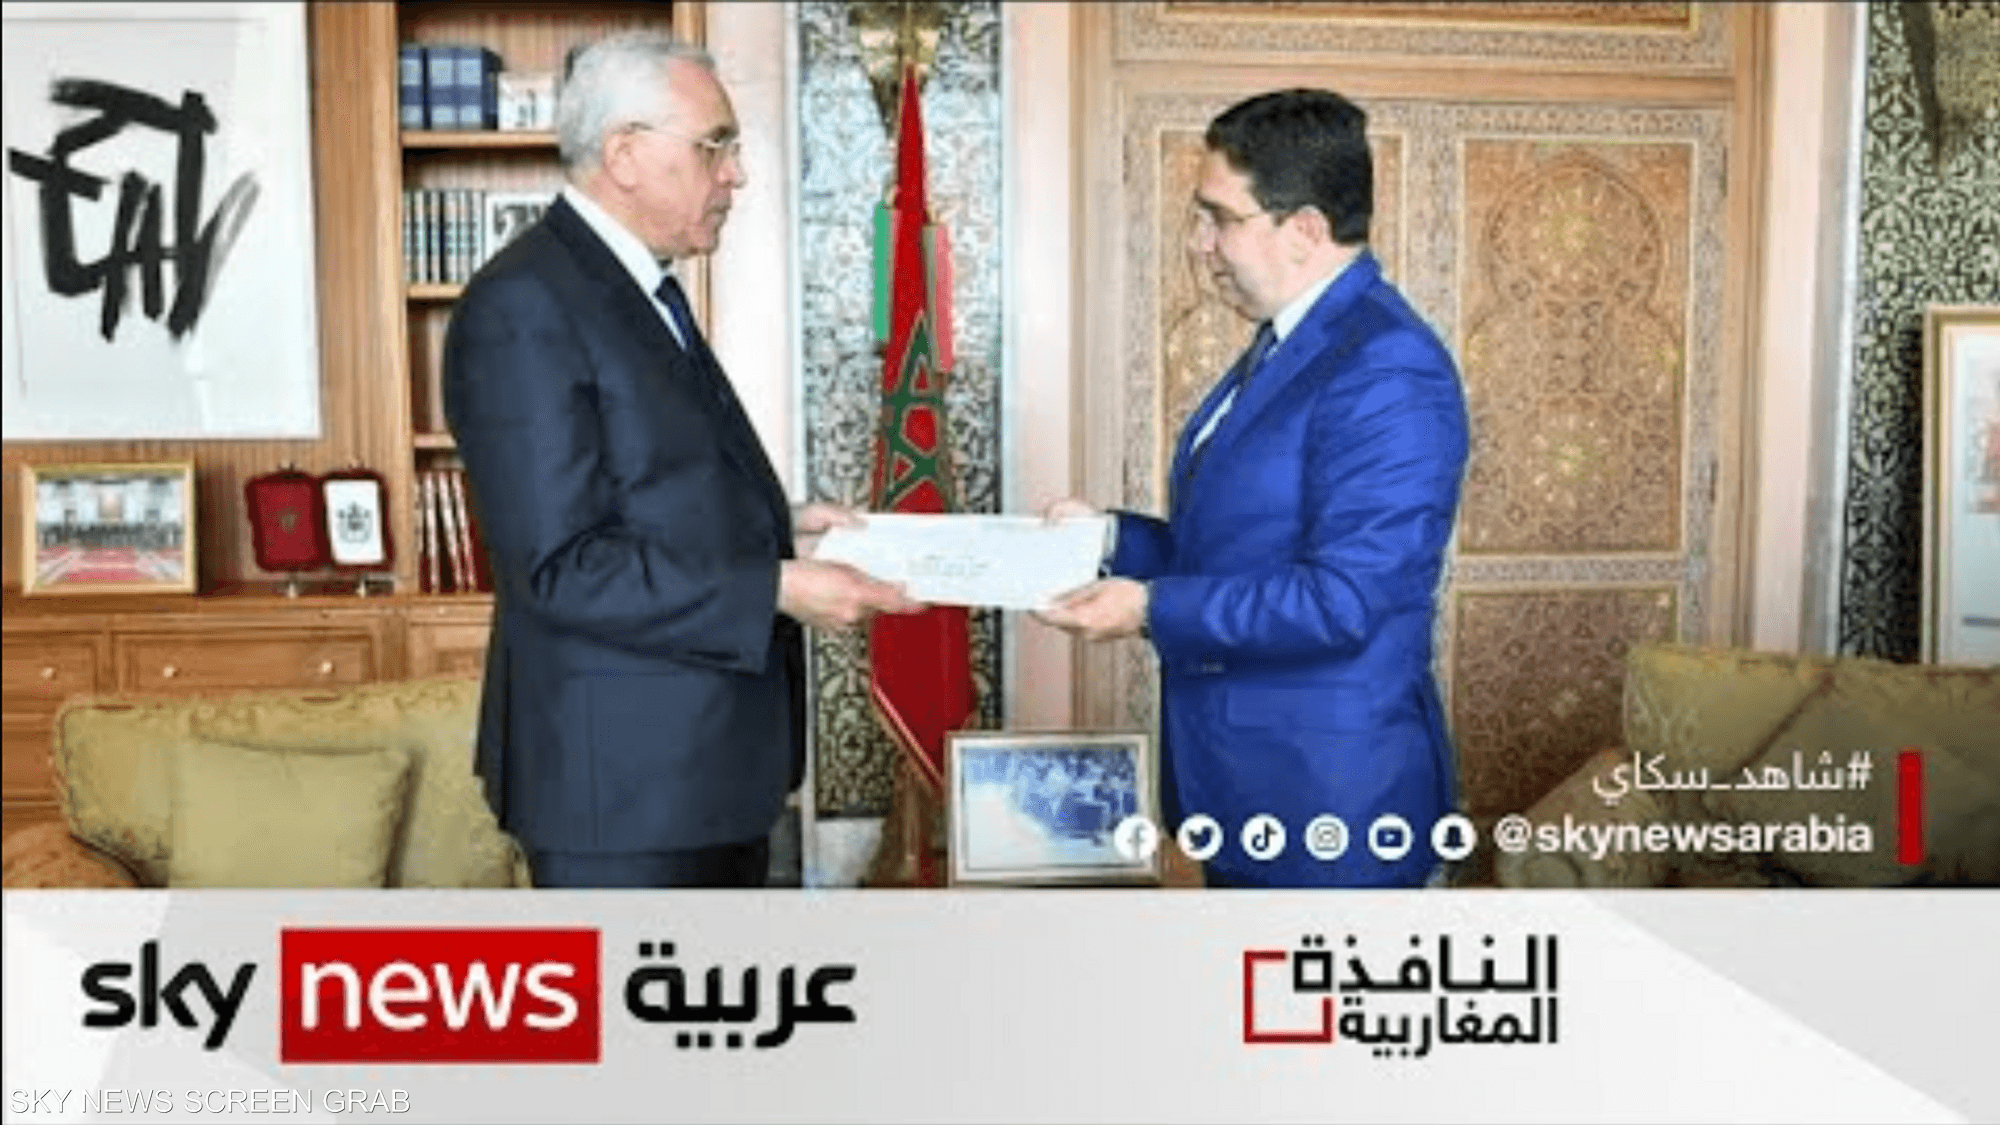 دعوة جزائرية رسمية للمغرب لحضور القمة العربية